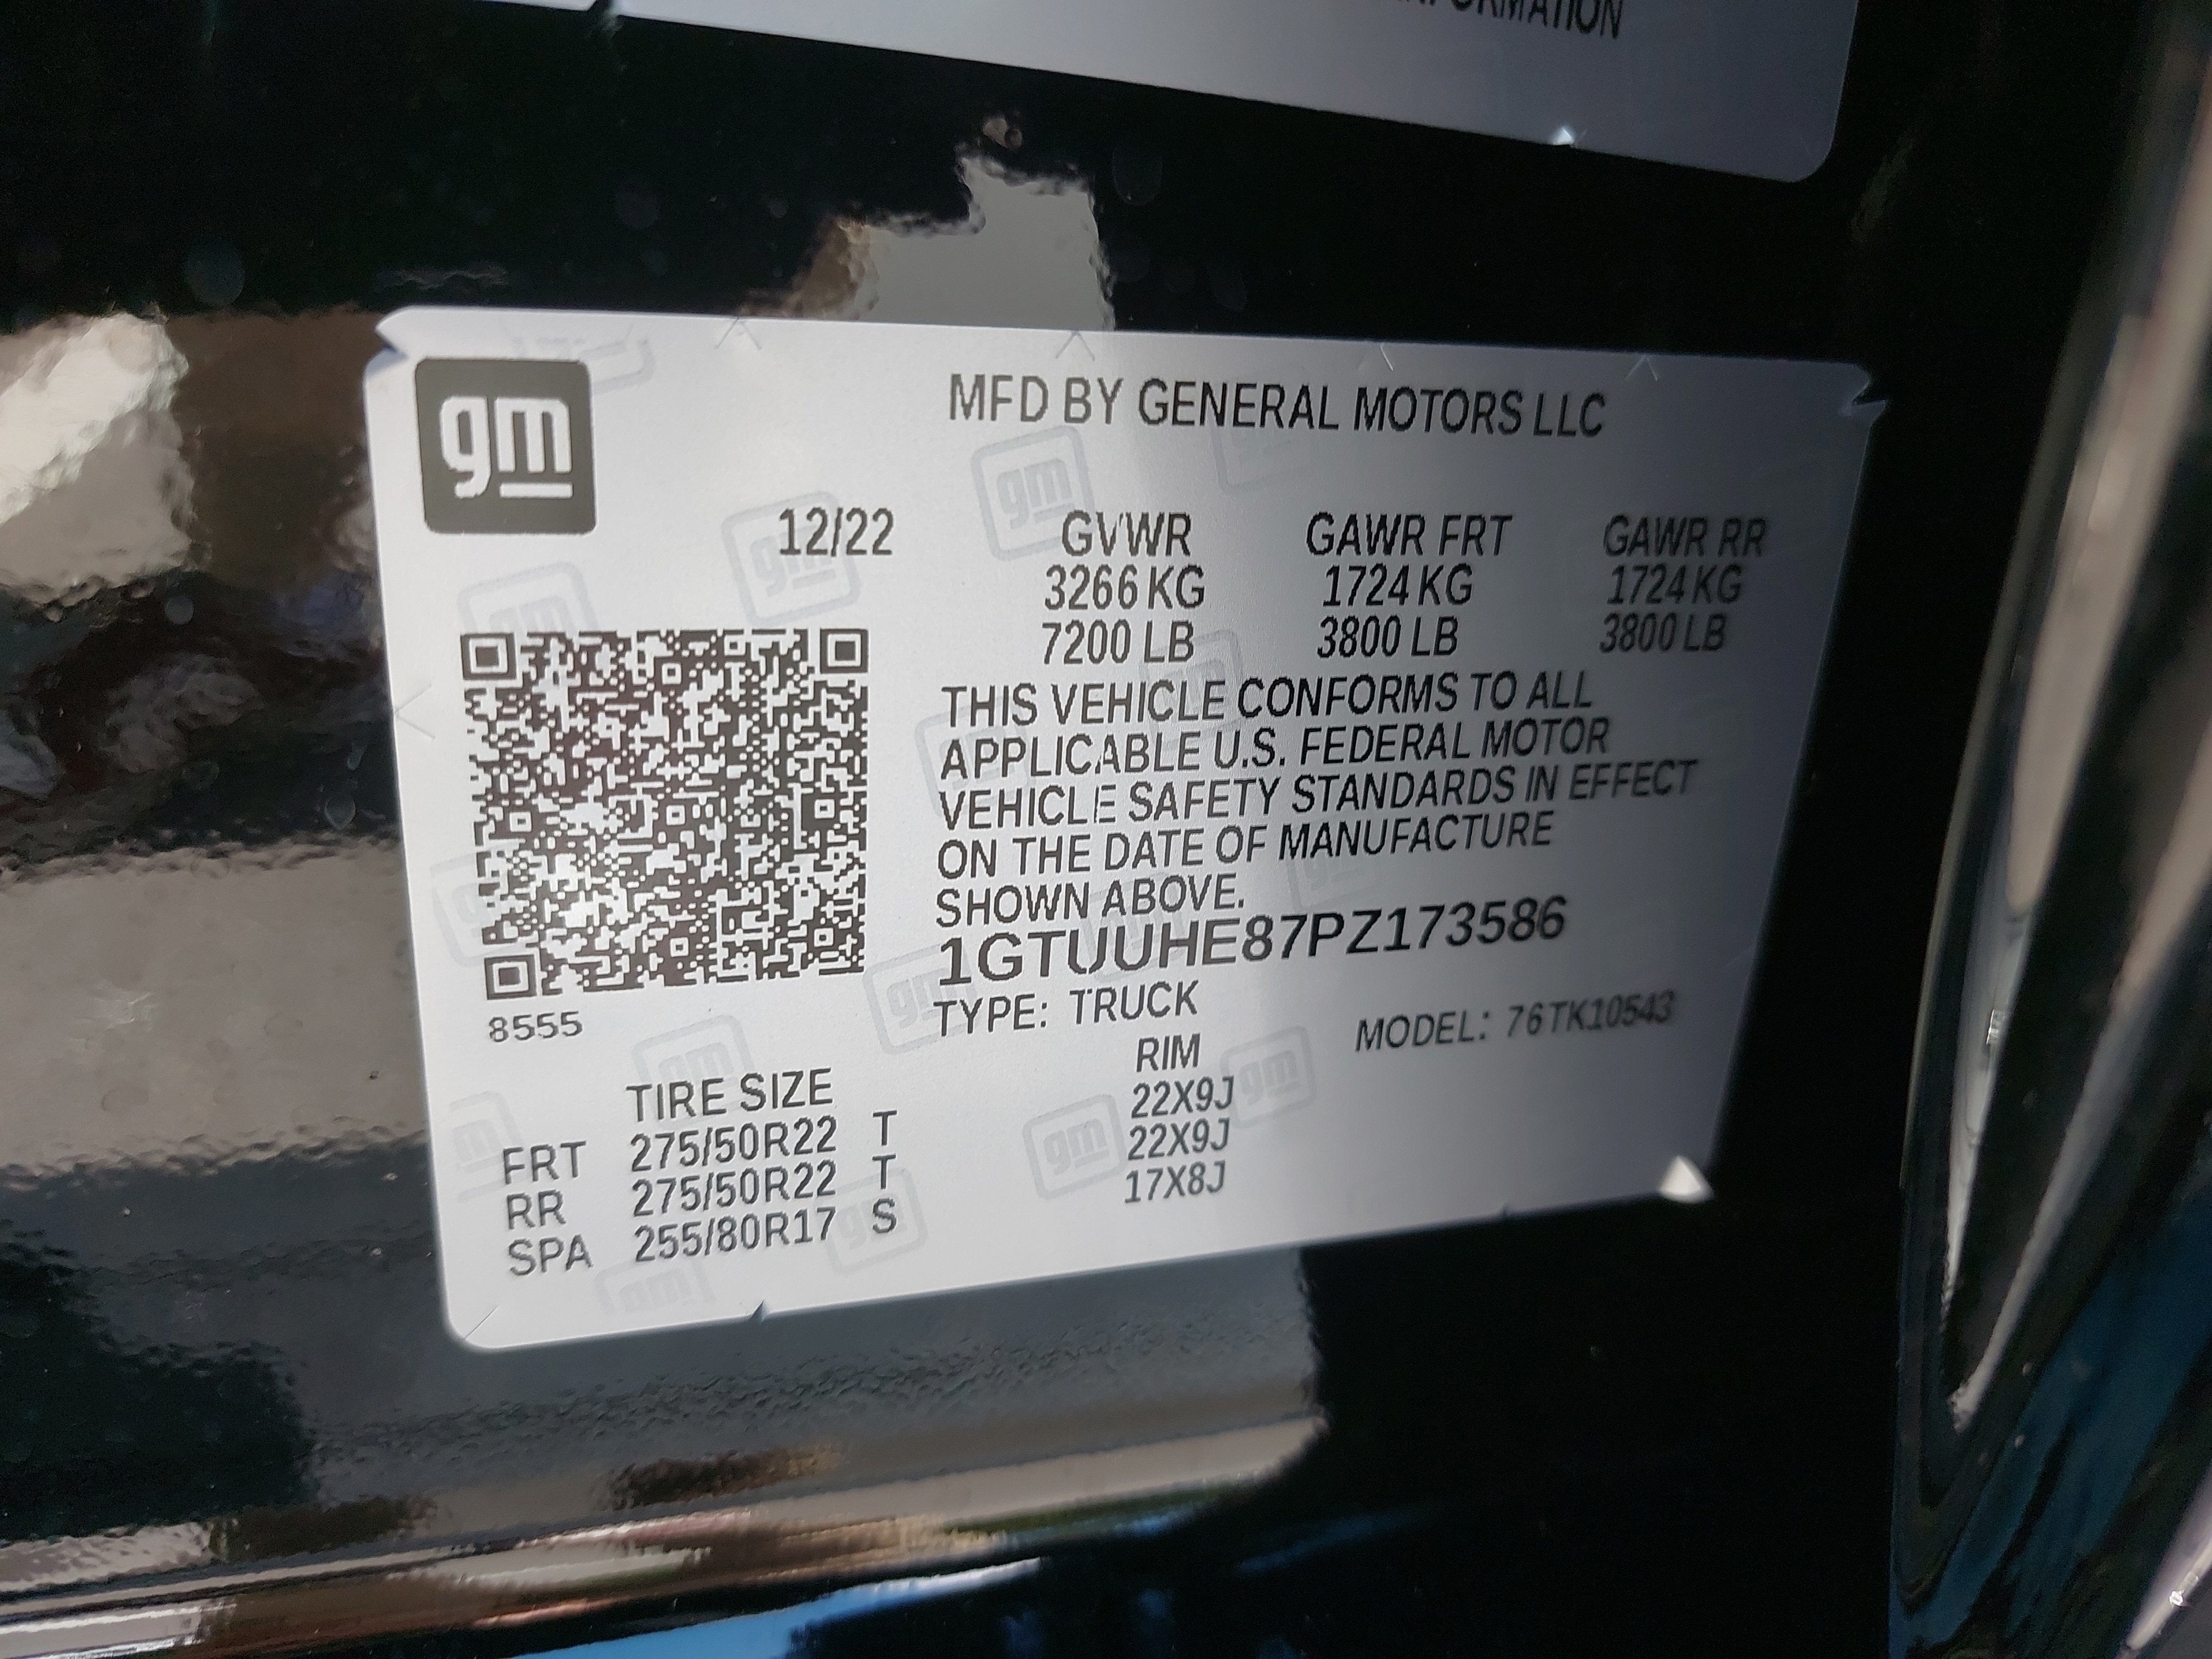 2023 GMC Sierra 1500 Denali Ultimate